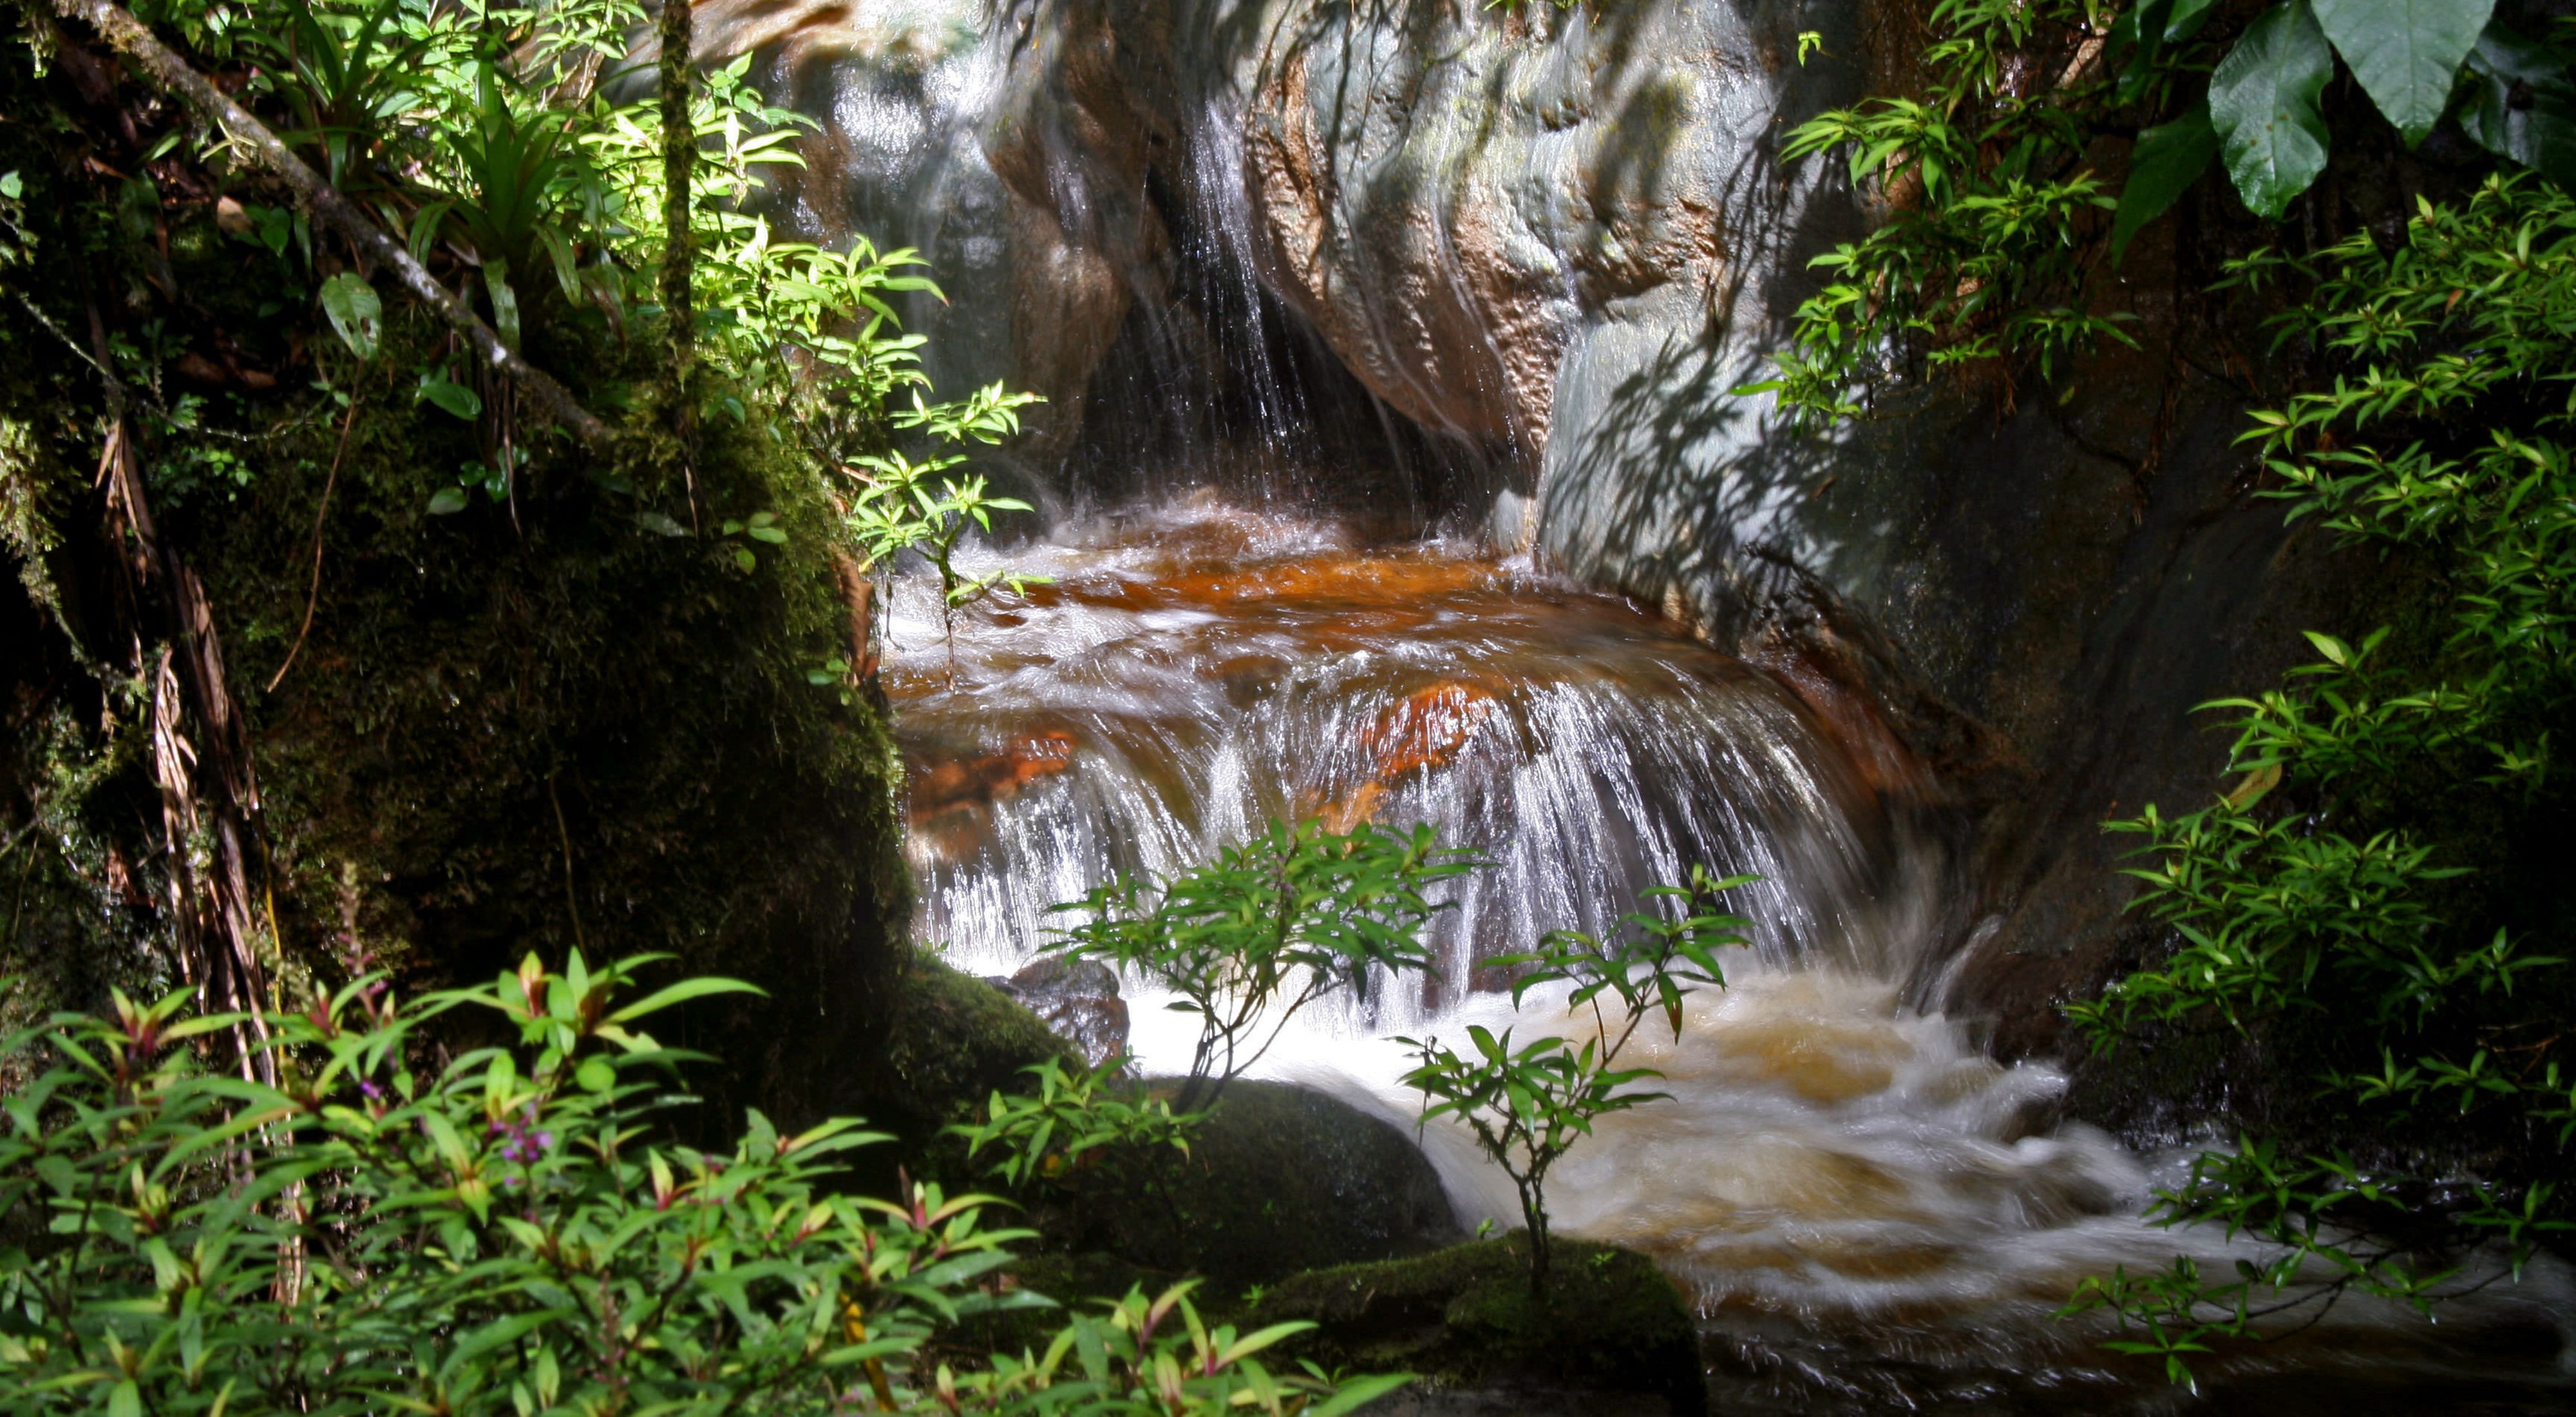  El agua dulce fluye por un pequeño arroyo en la región andina de Colombia, en Sudamérica